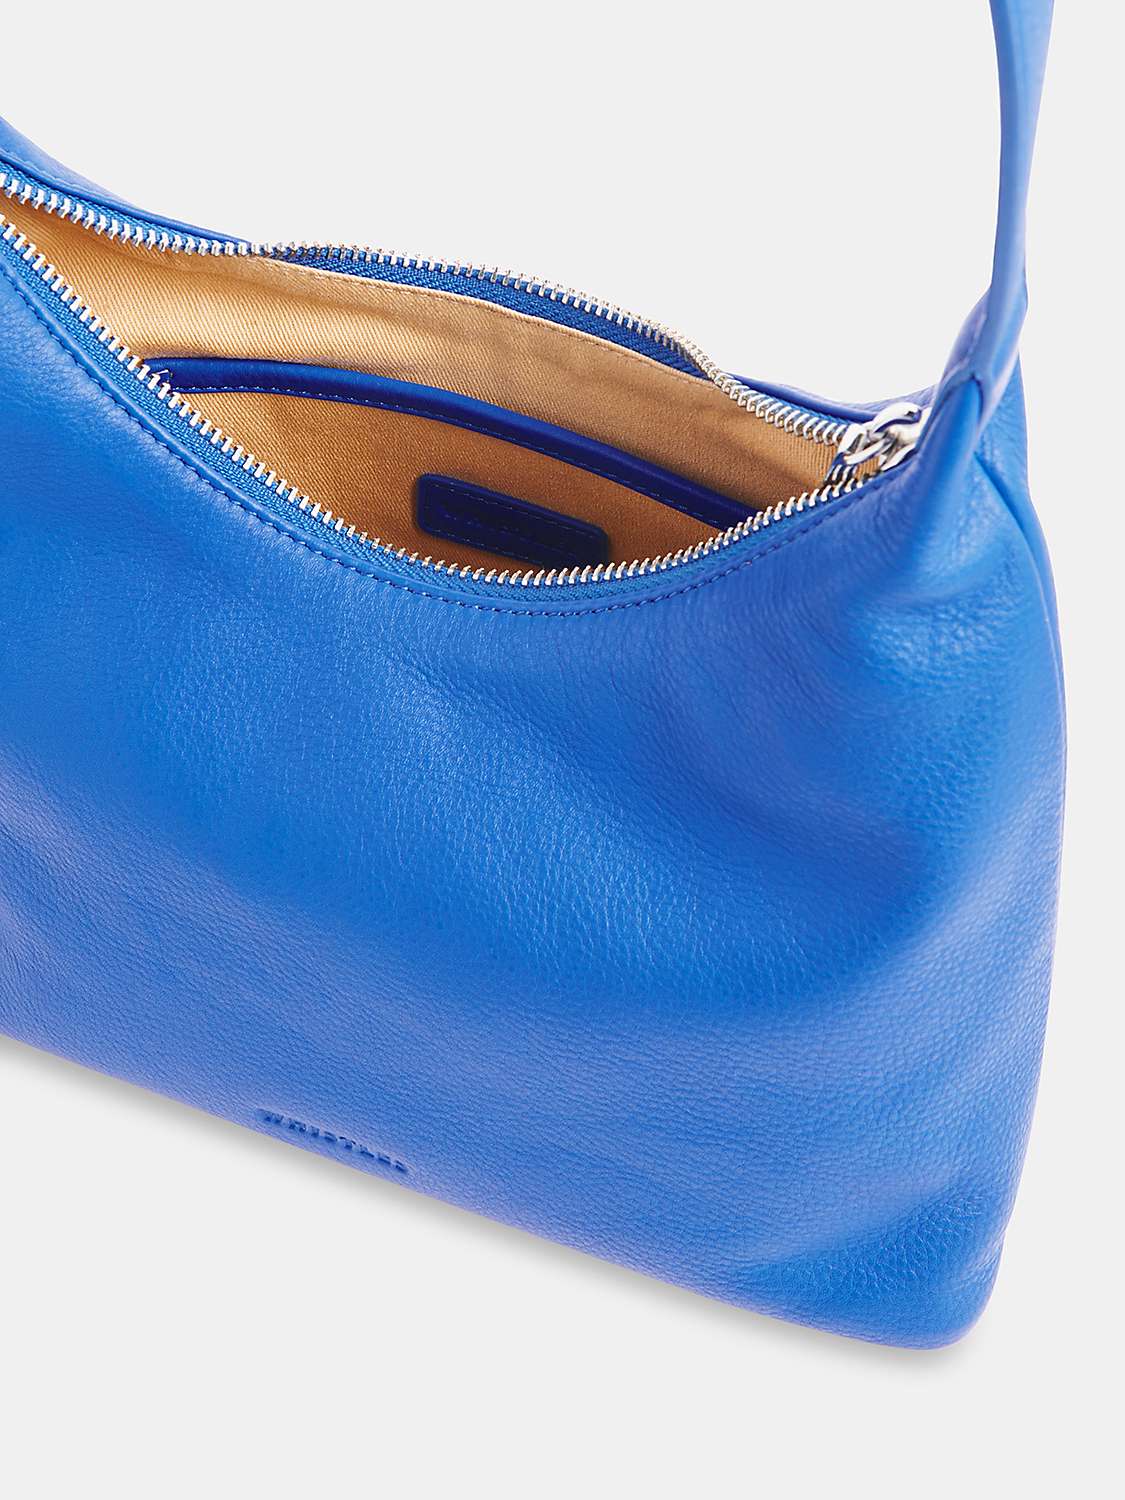 Buy Whistles Emmie Top Handle Leather Shoulder Bag Online at johnlewis.com